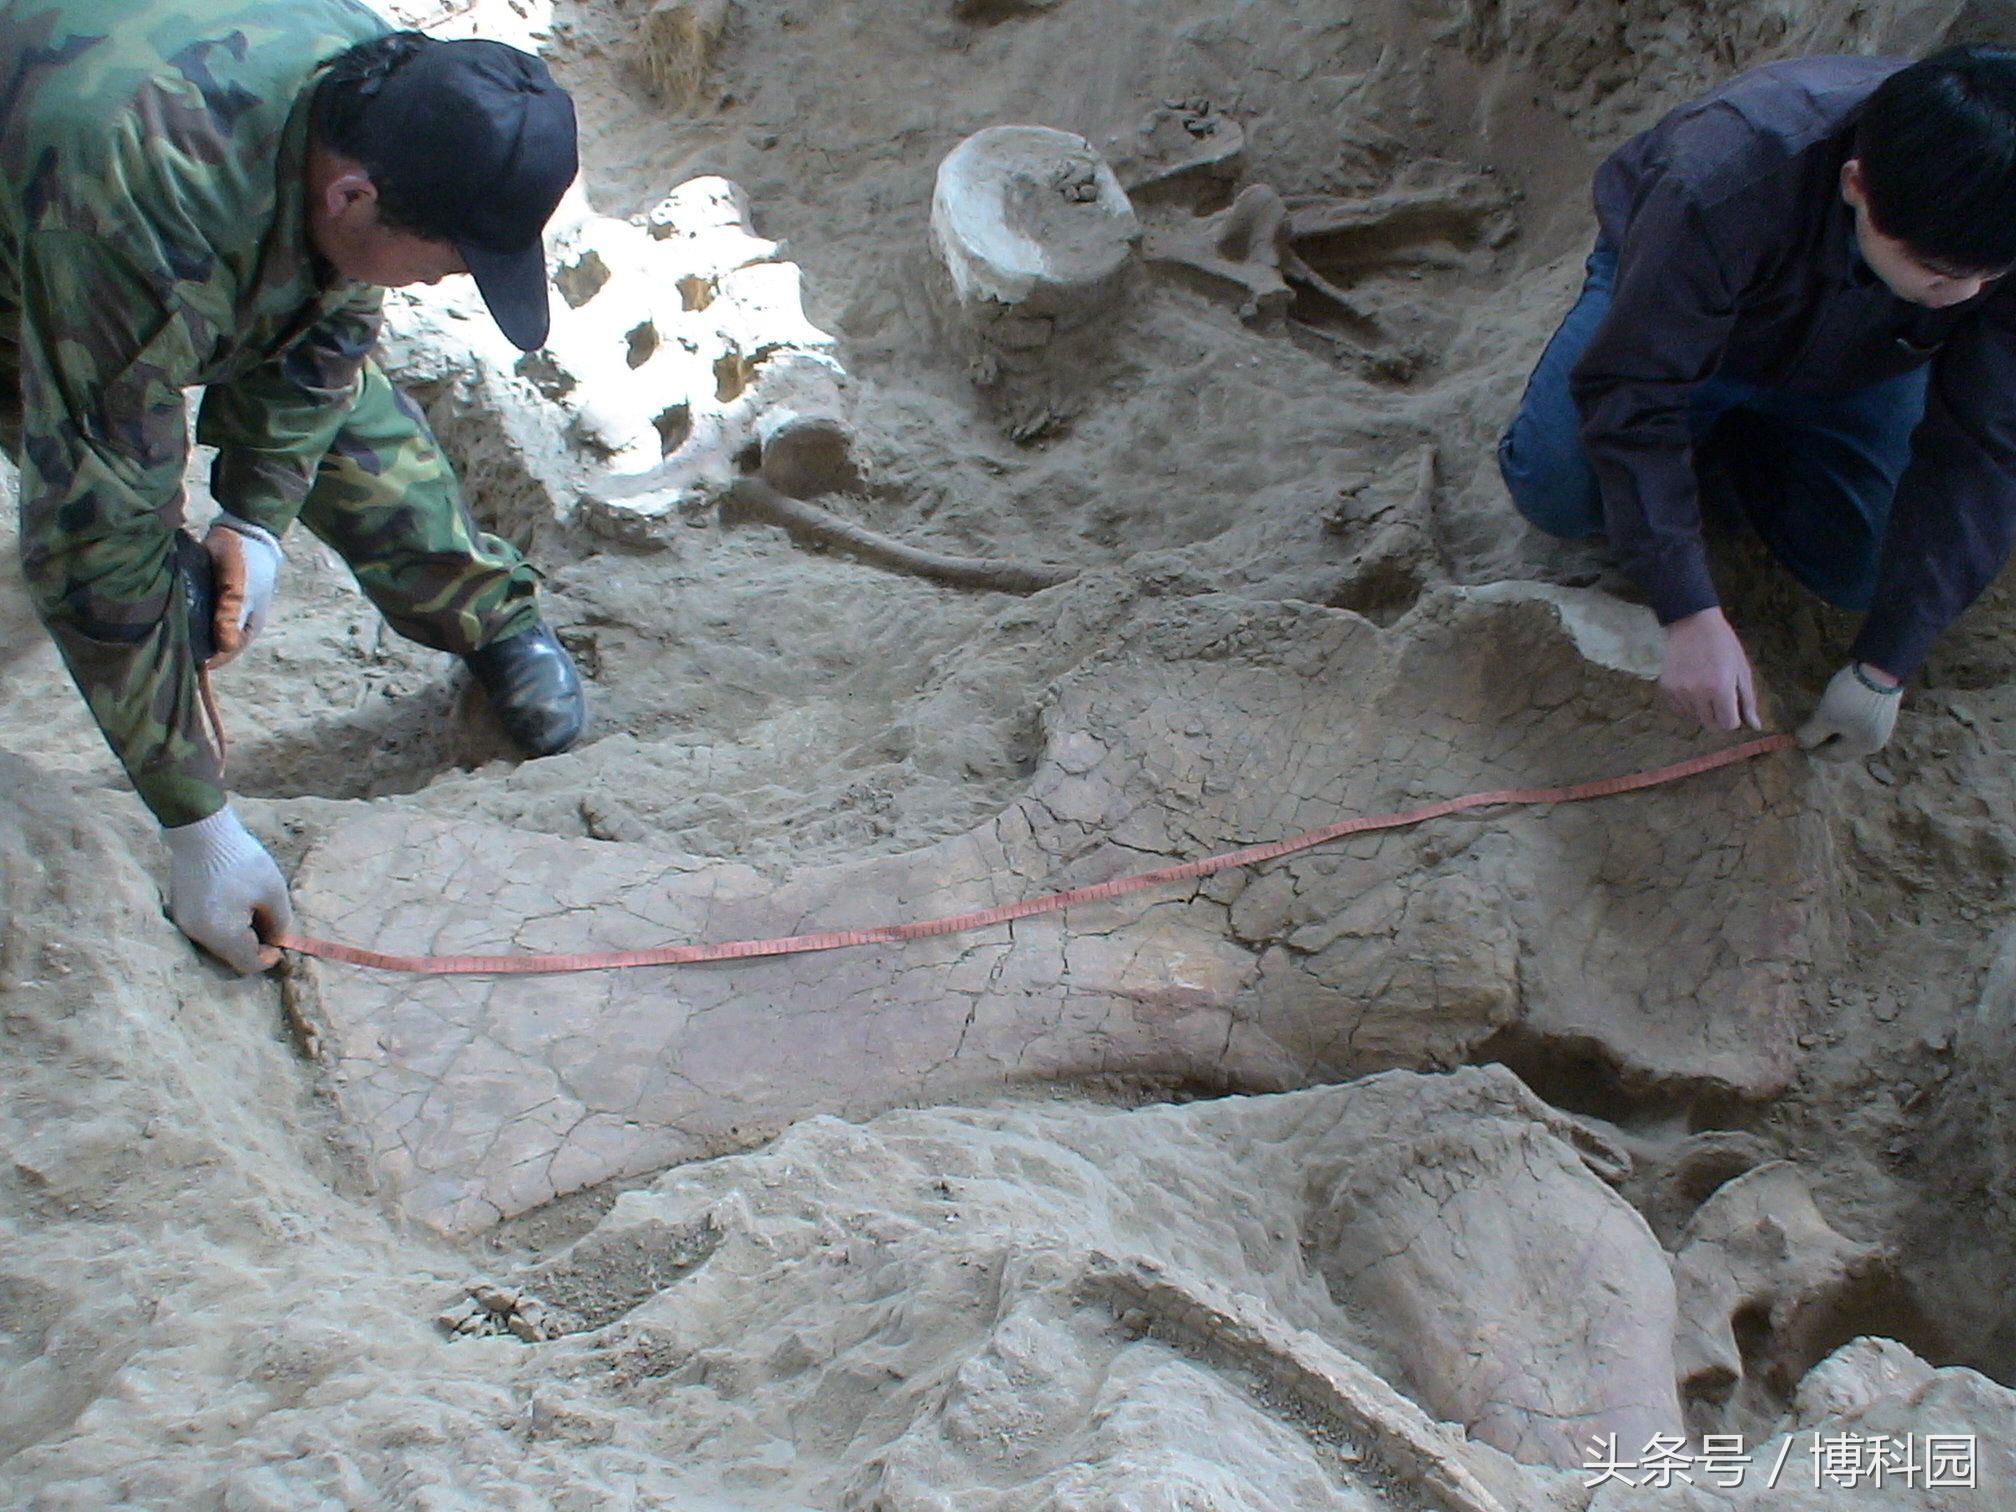 中国出土的“神奇龙”可以追溯到亚洲最早蜥脚类动物